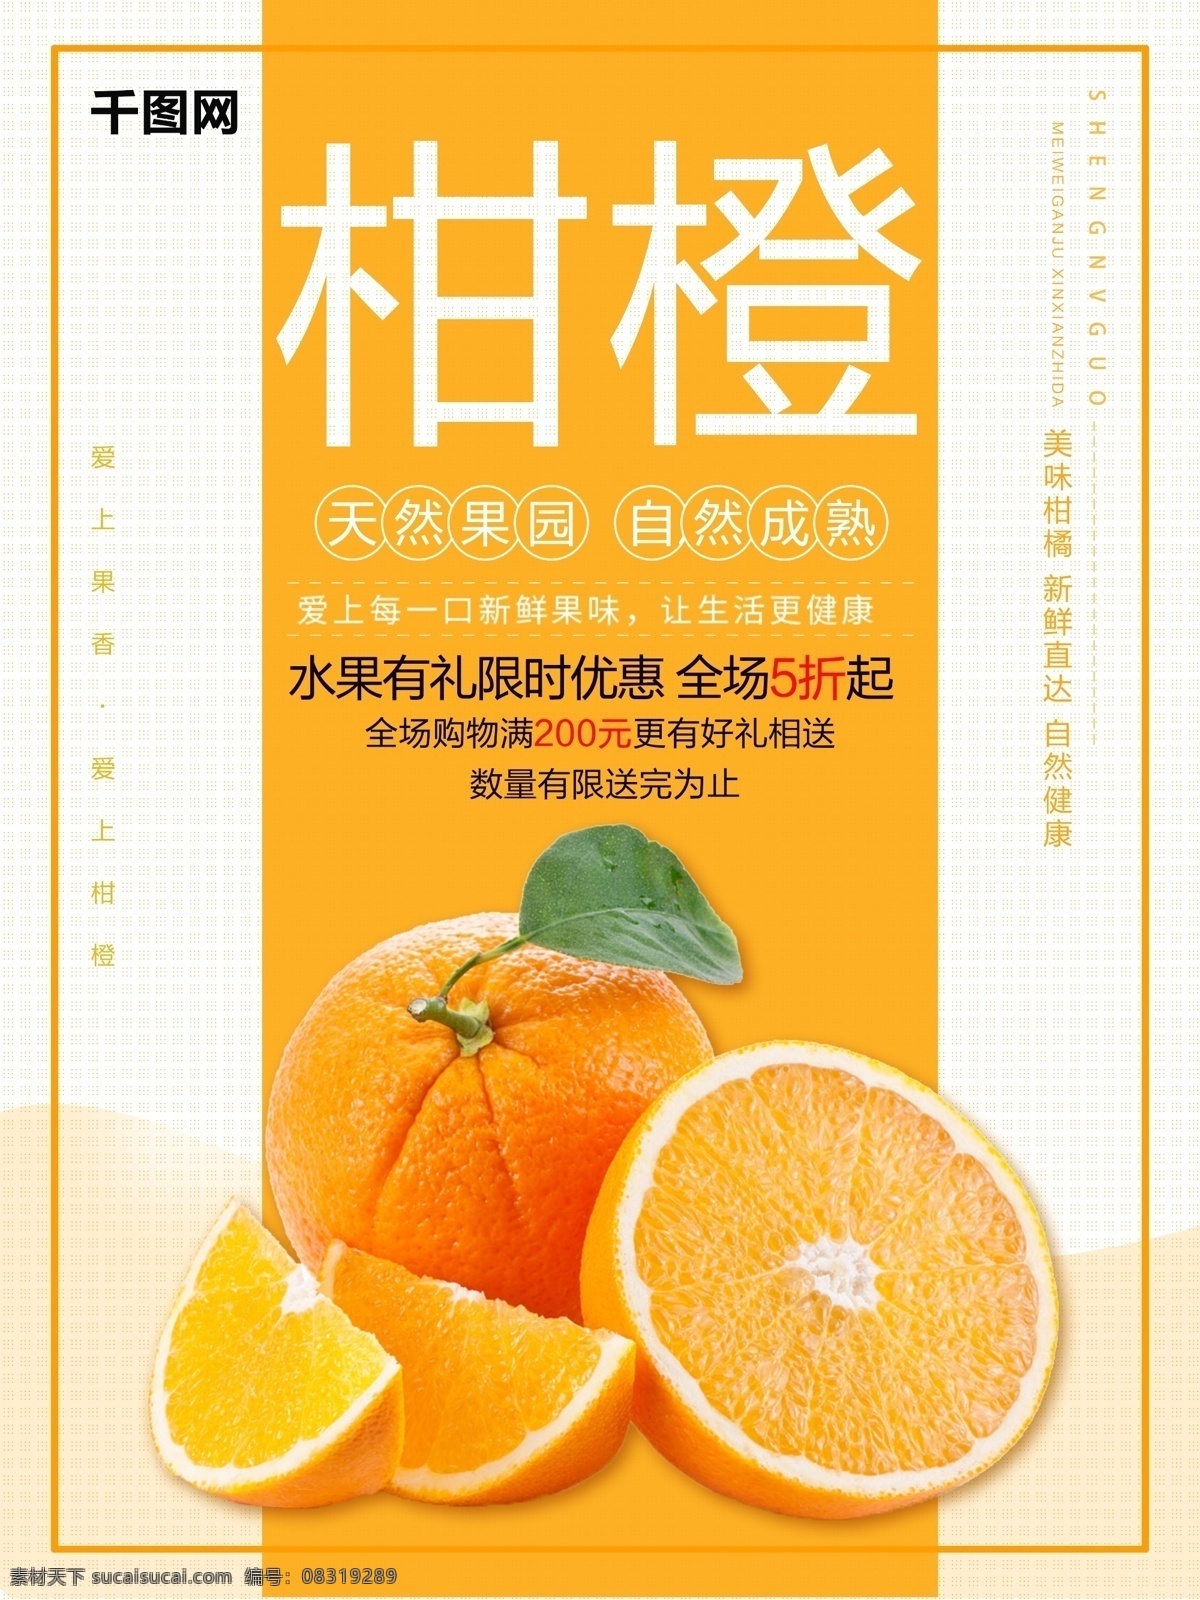 水果 促销 甜橙 赣南 橙子 柑橘 美食 海报 水果促销 甜橙海报 赣南甜橙 橘子 水果海报